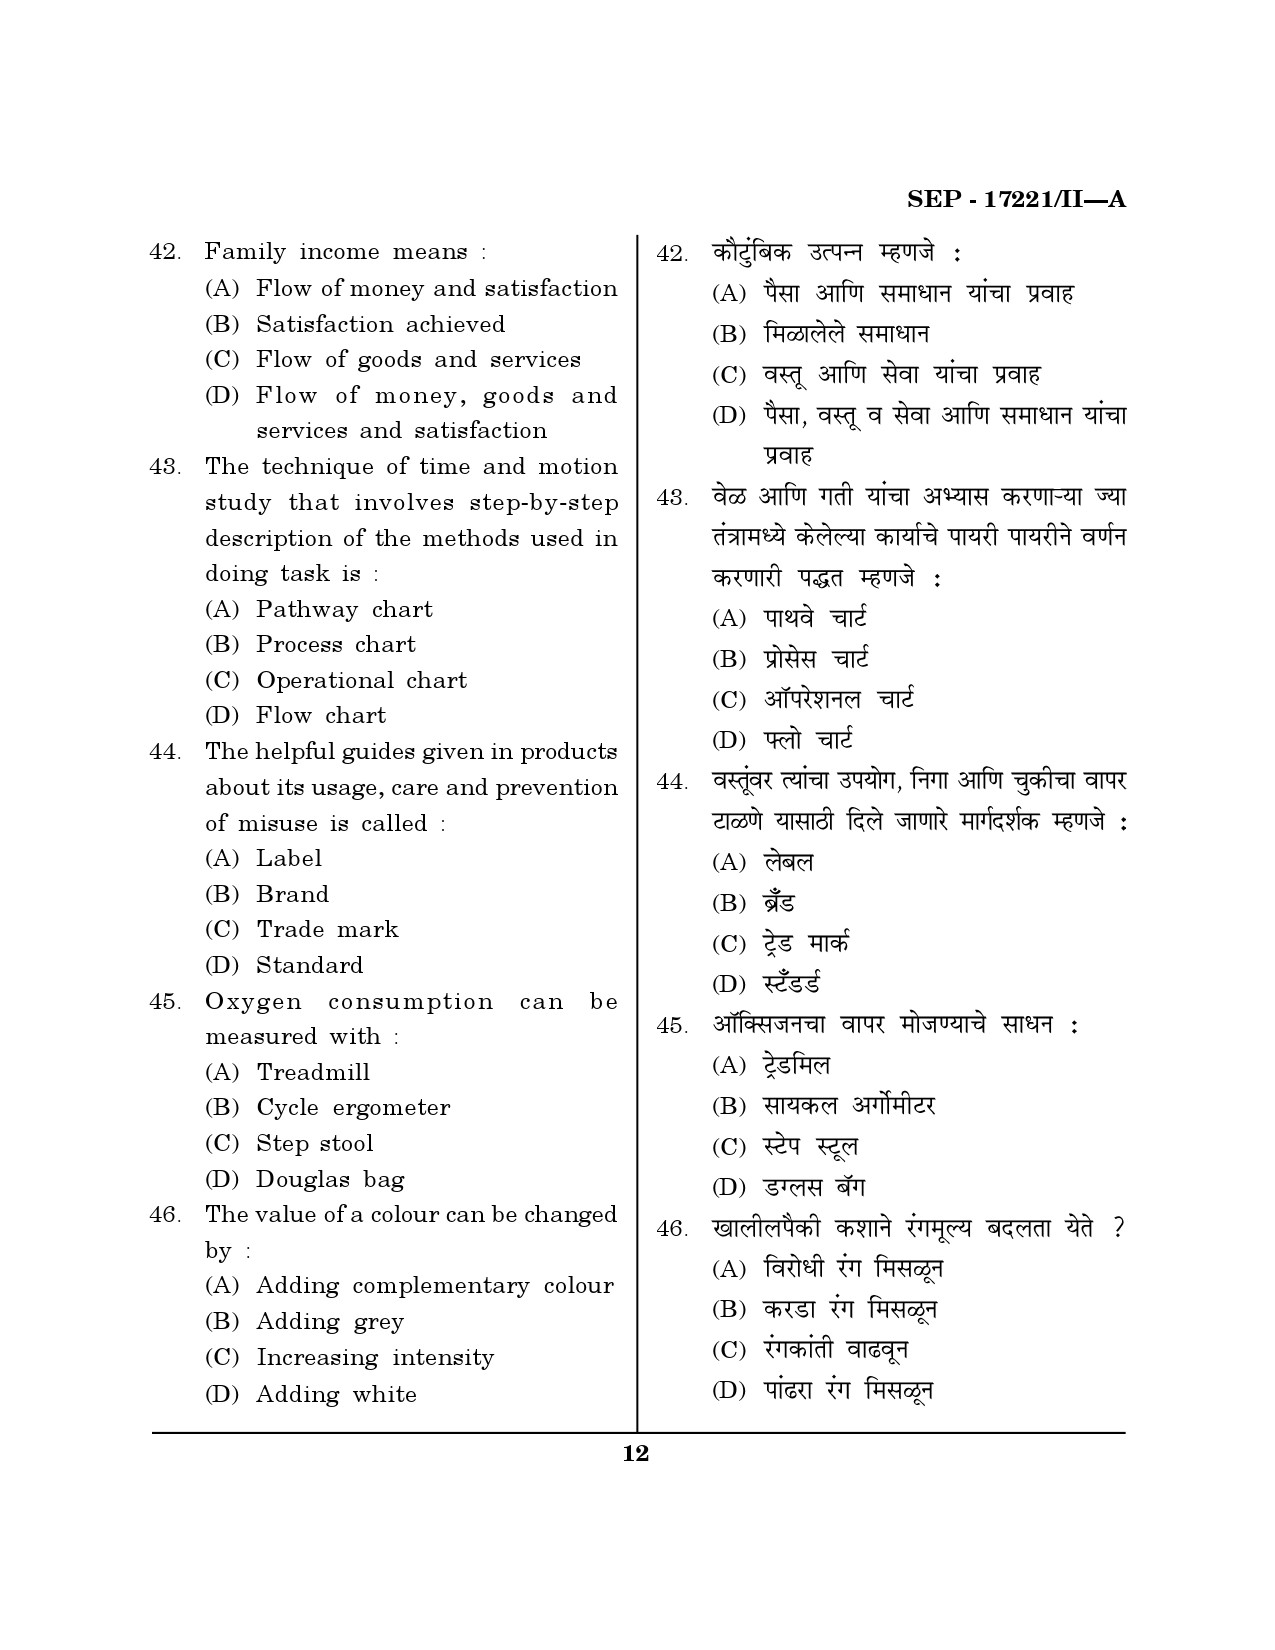 Maharashtra SET Home Science Exam Question Paper September 2021 11